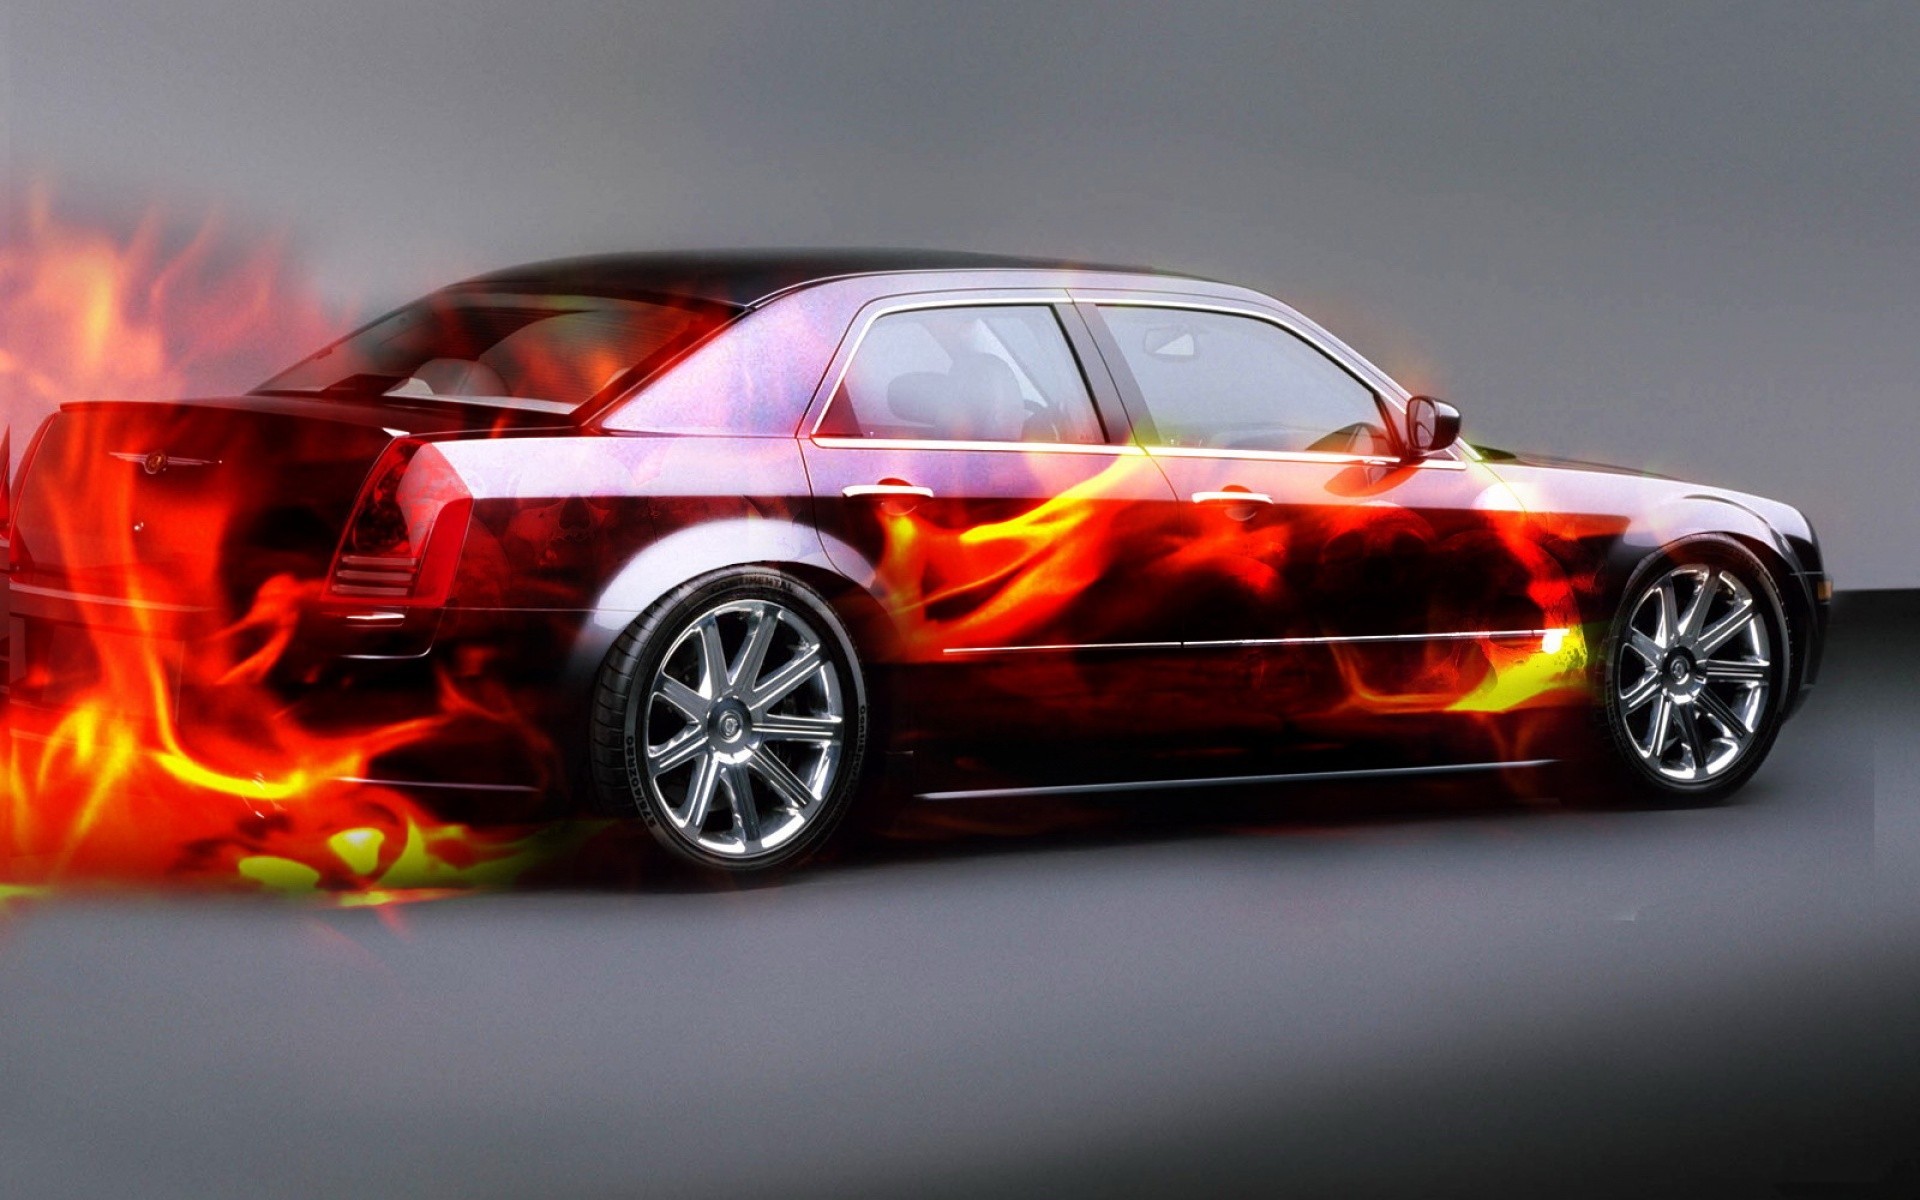 Wallpapers chrysler fiery sedan on the desktop